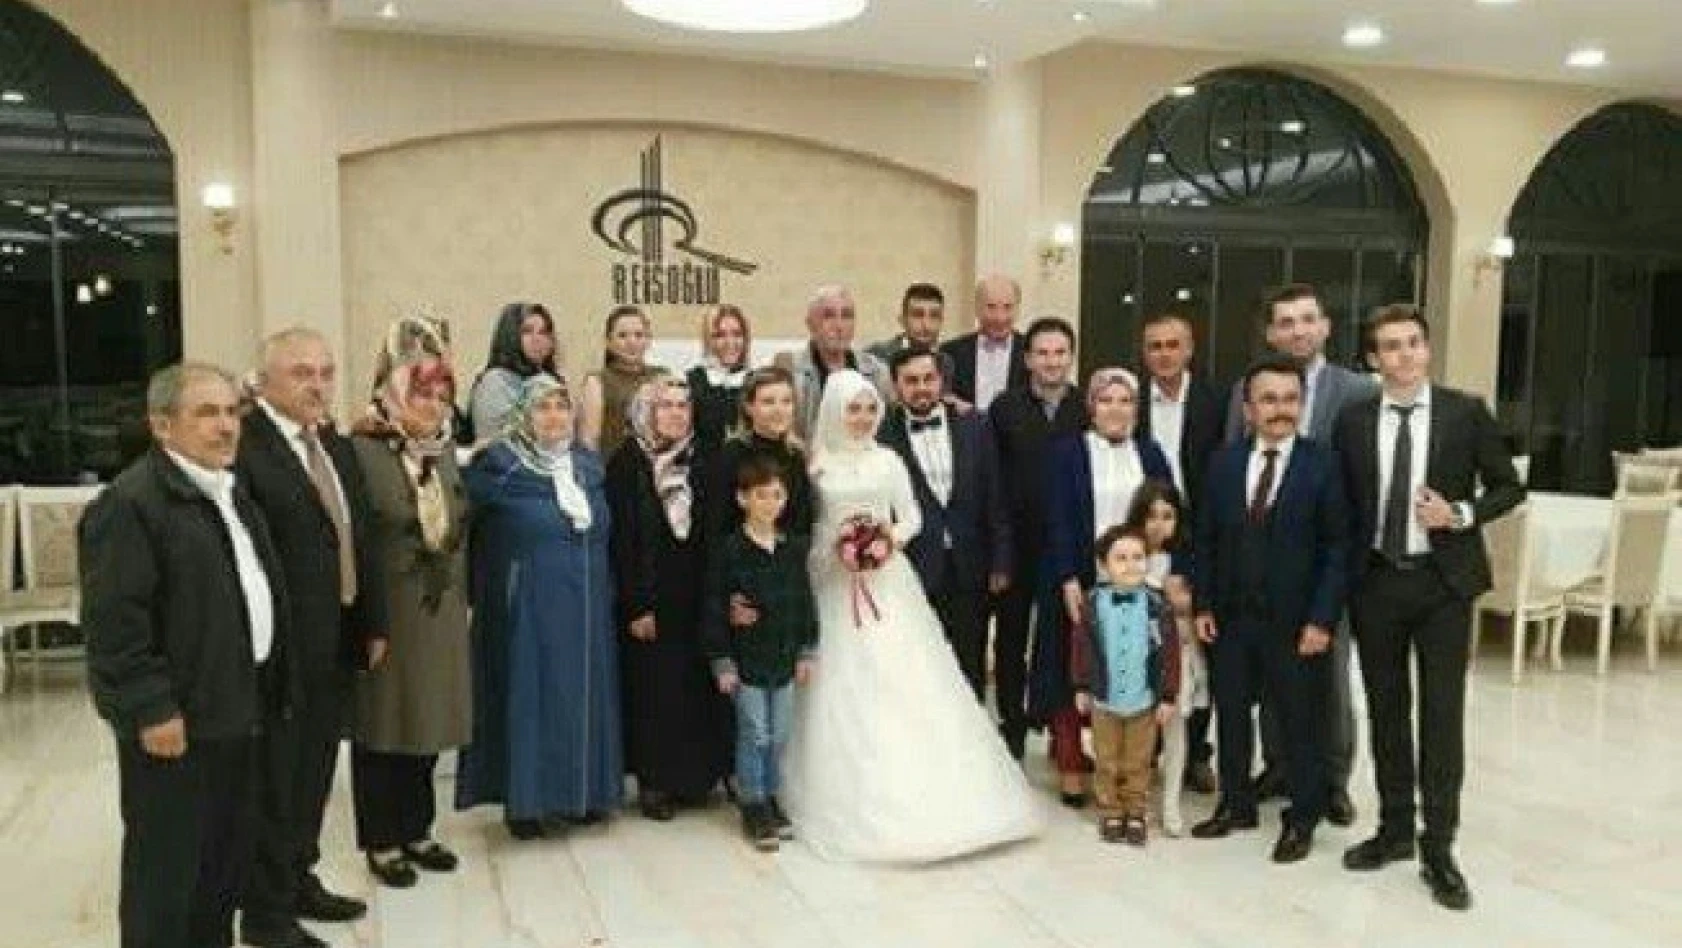 Ticaret İl Müdürü Sefa Özata, kızını evlendirdi